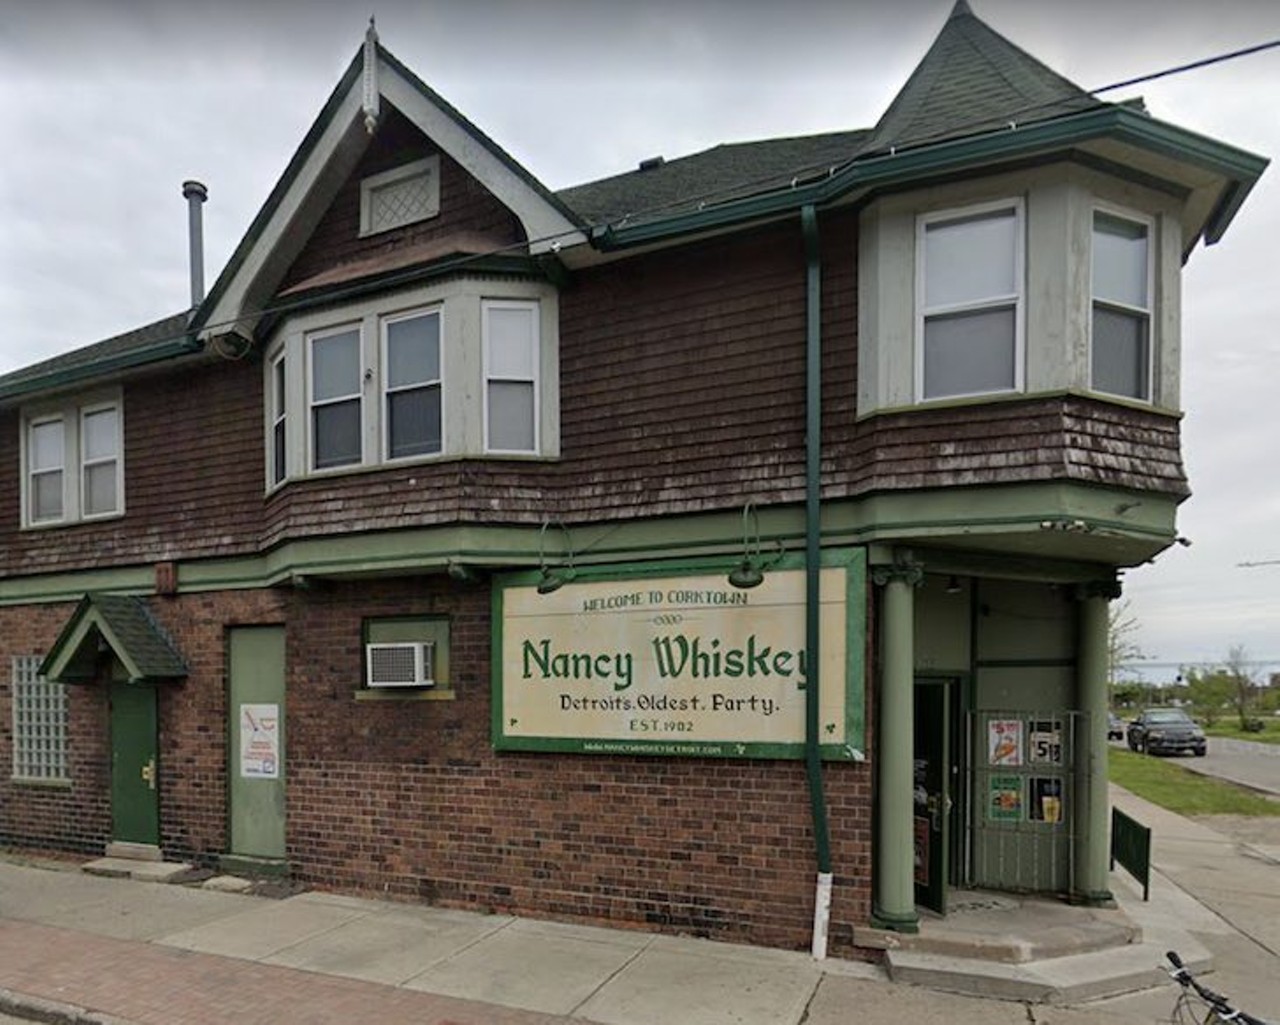 Nancy Whiskey
2644 Harrison St., Detroit; 313-962-4247
Photo via Google Maps